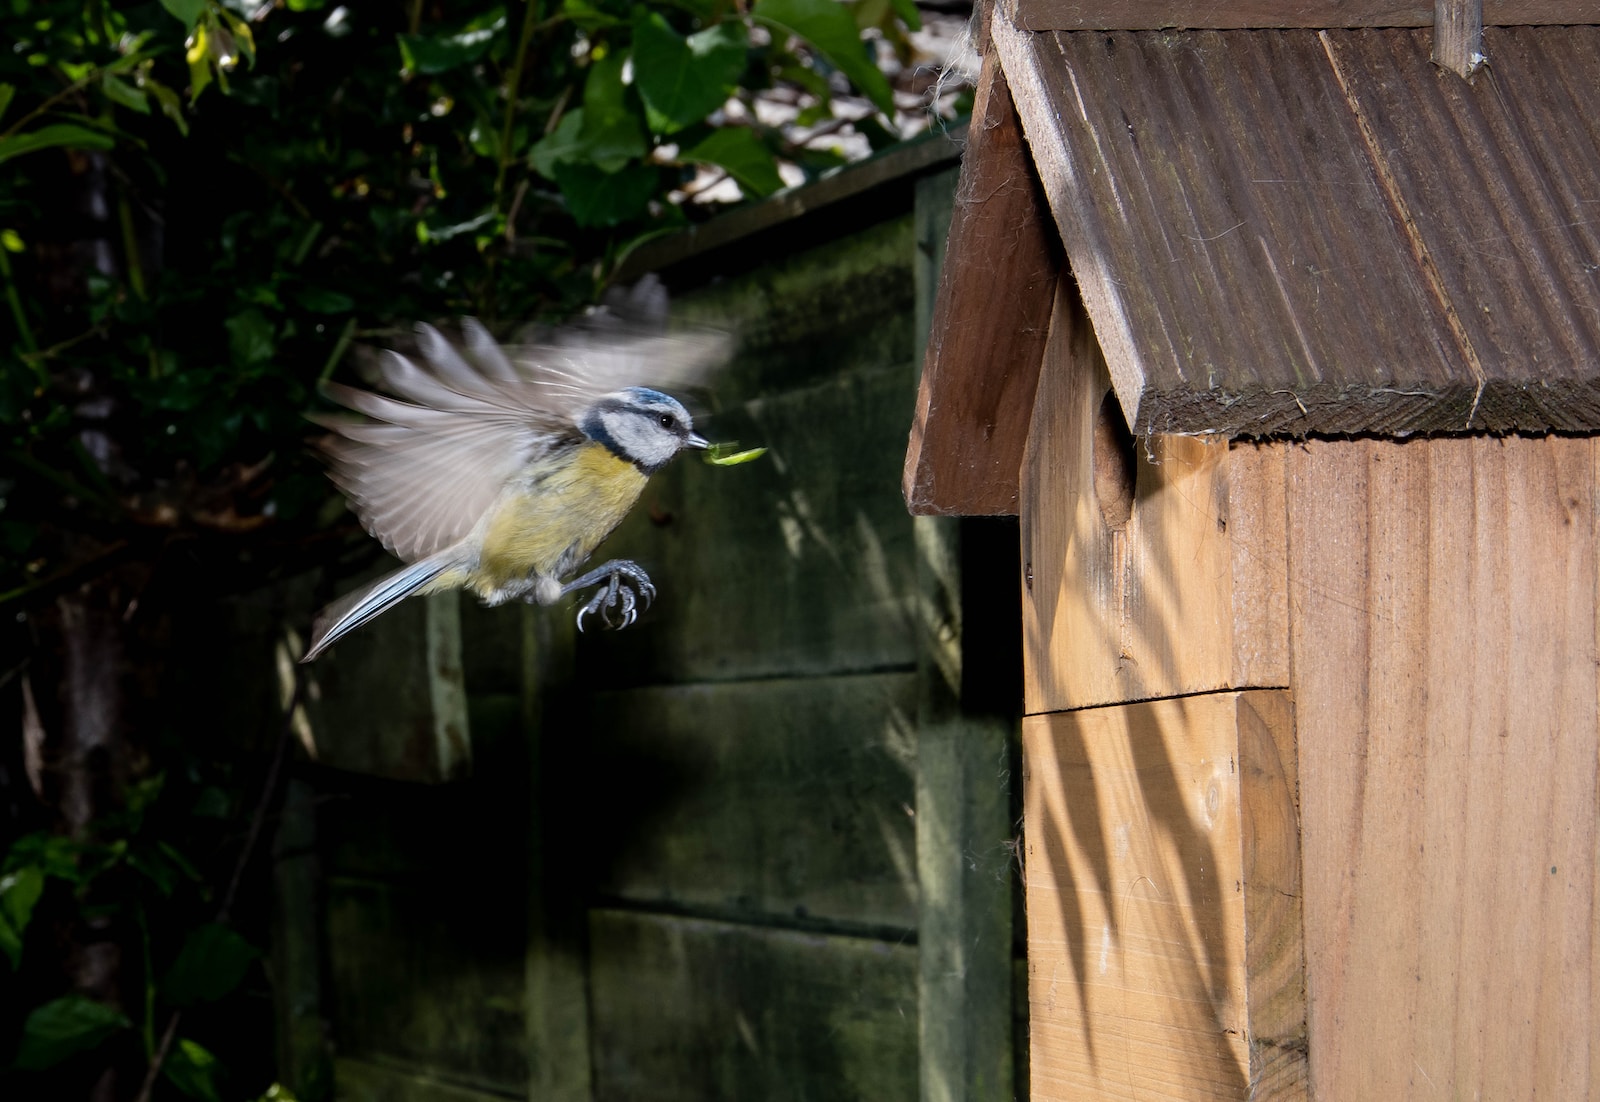 a bird is flying near a bird house